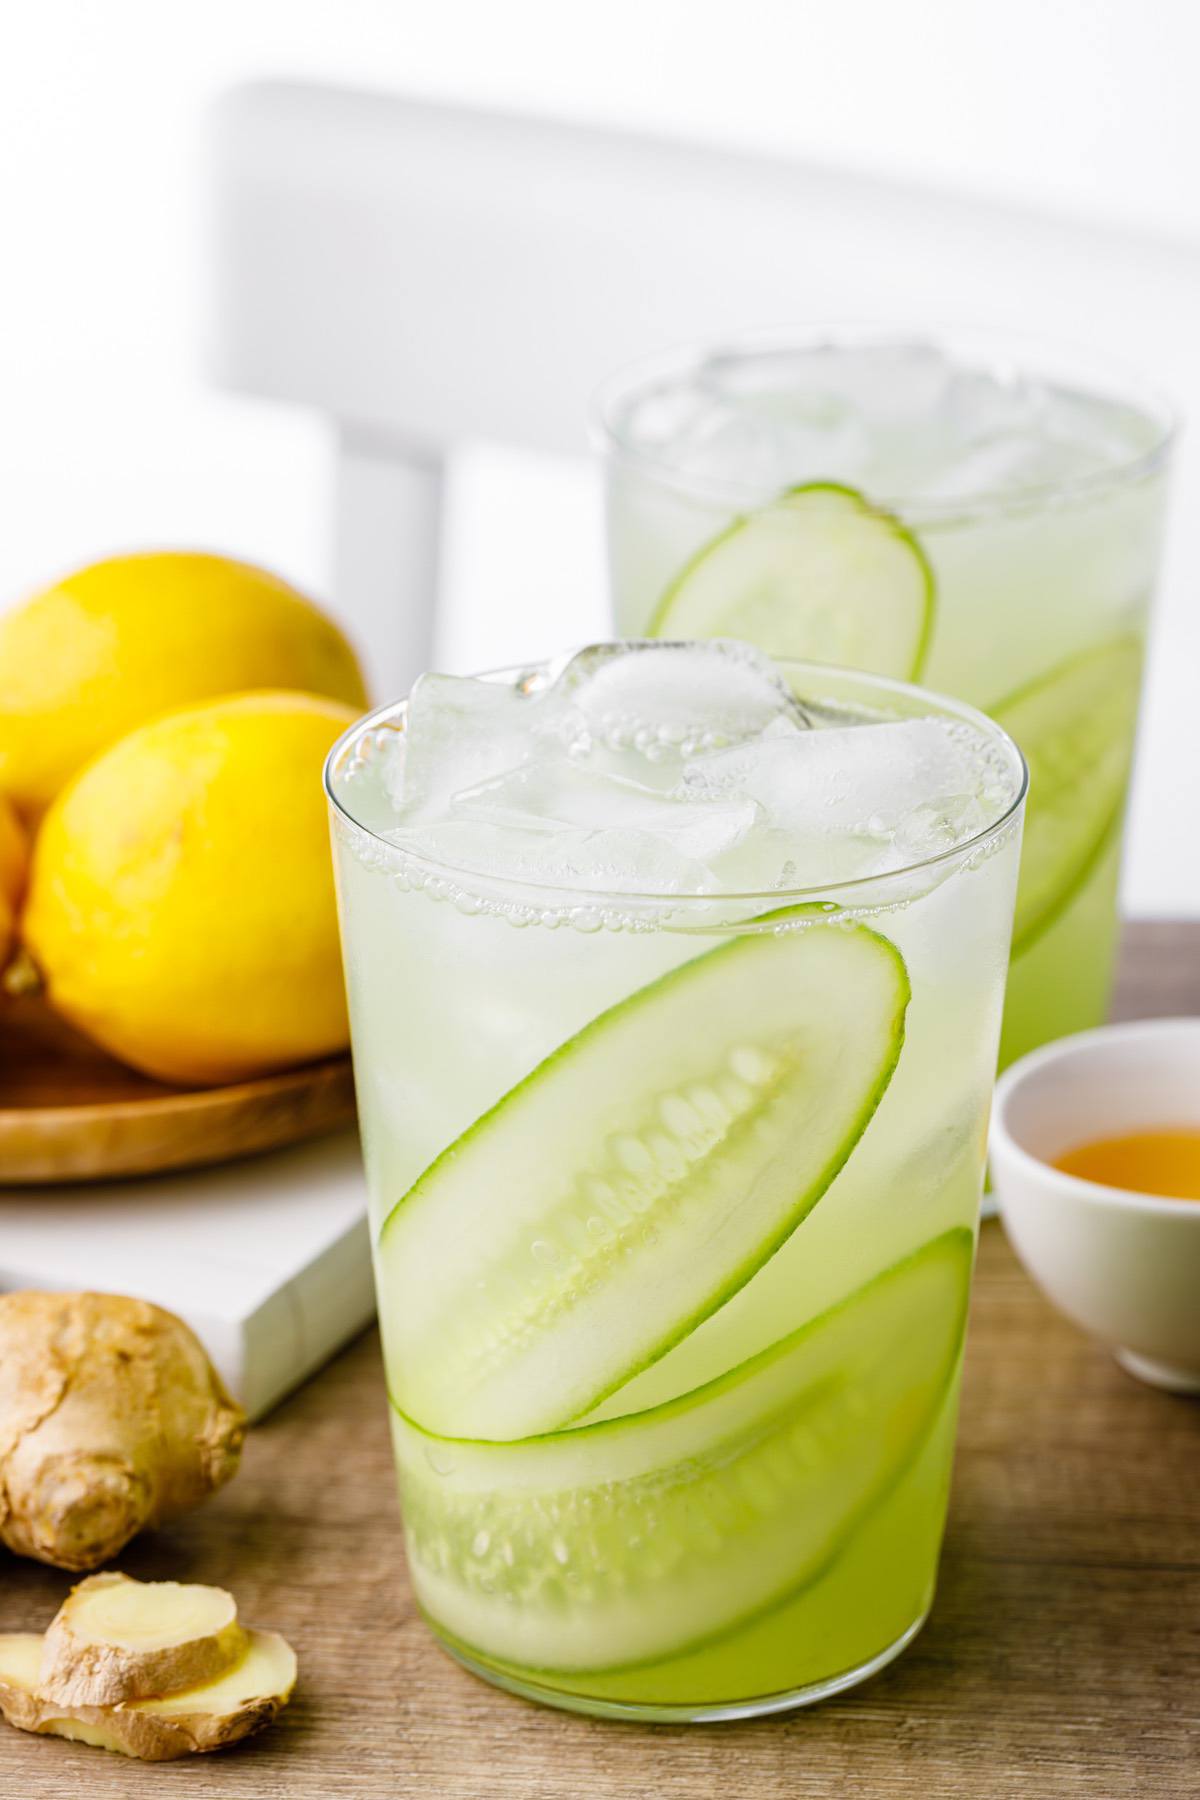 Ginger Cucumber Juice Lemonade